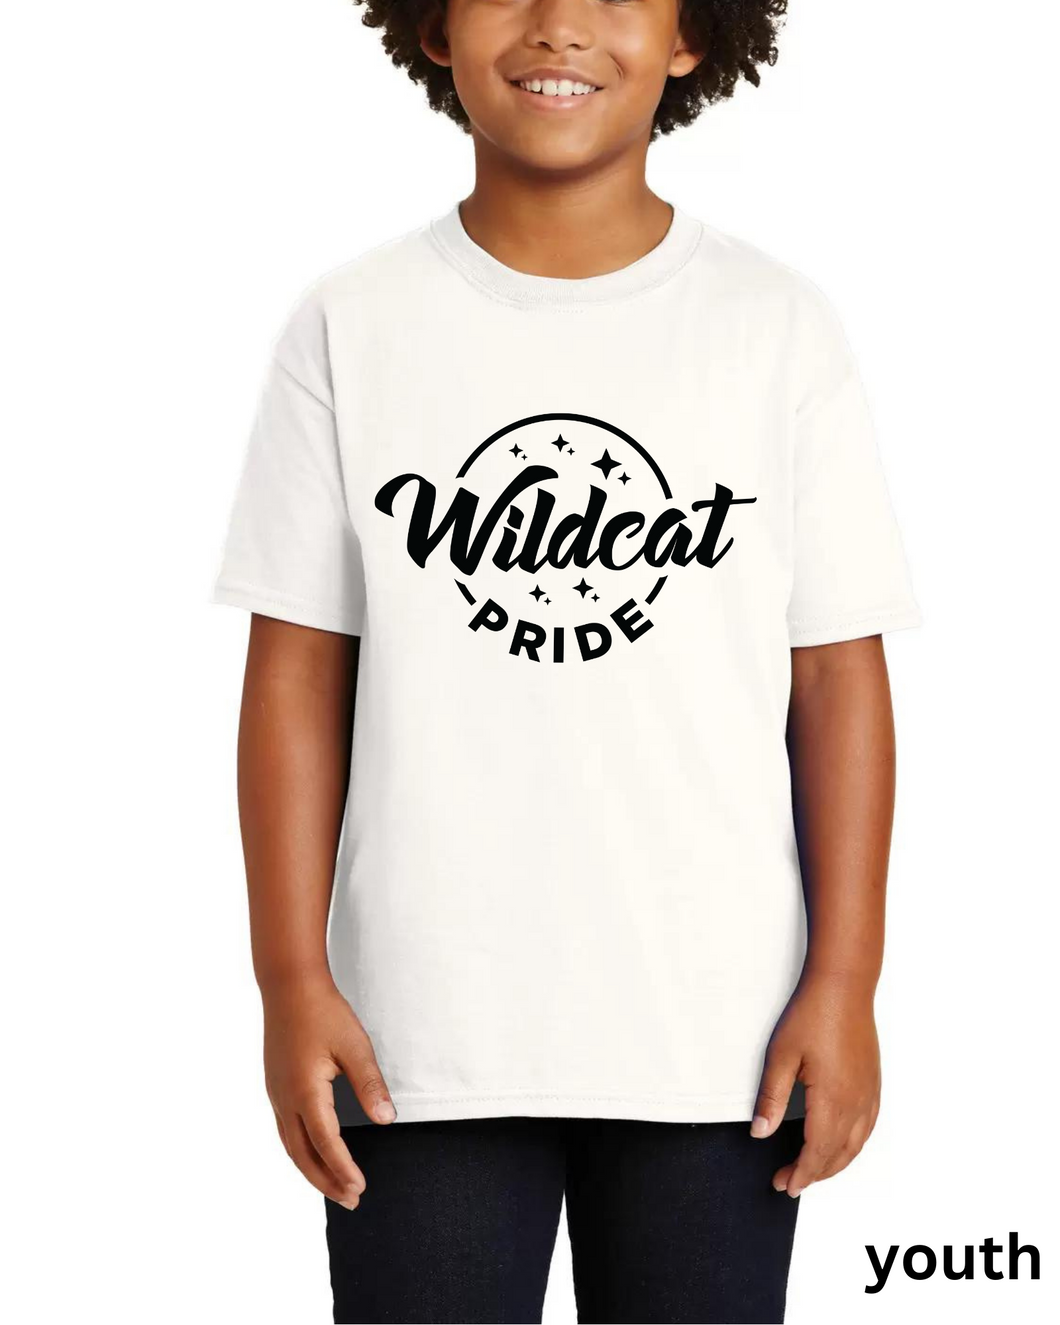 wildcat pride tee